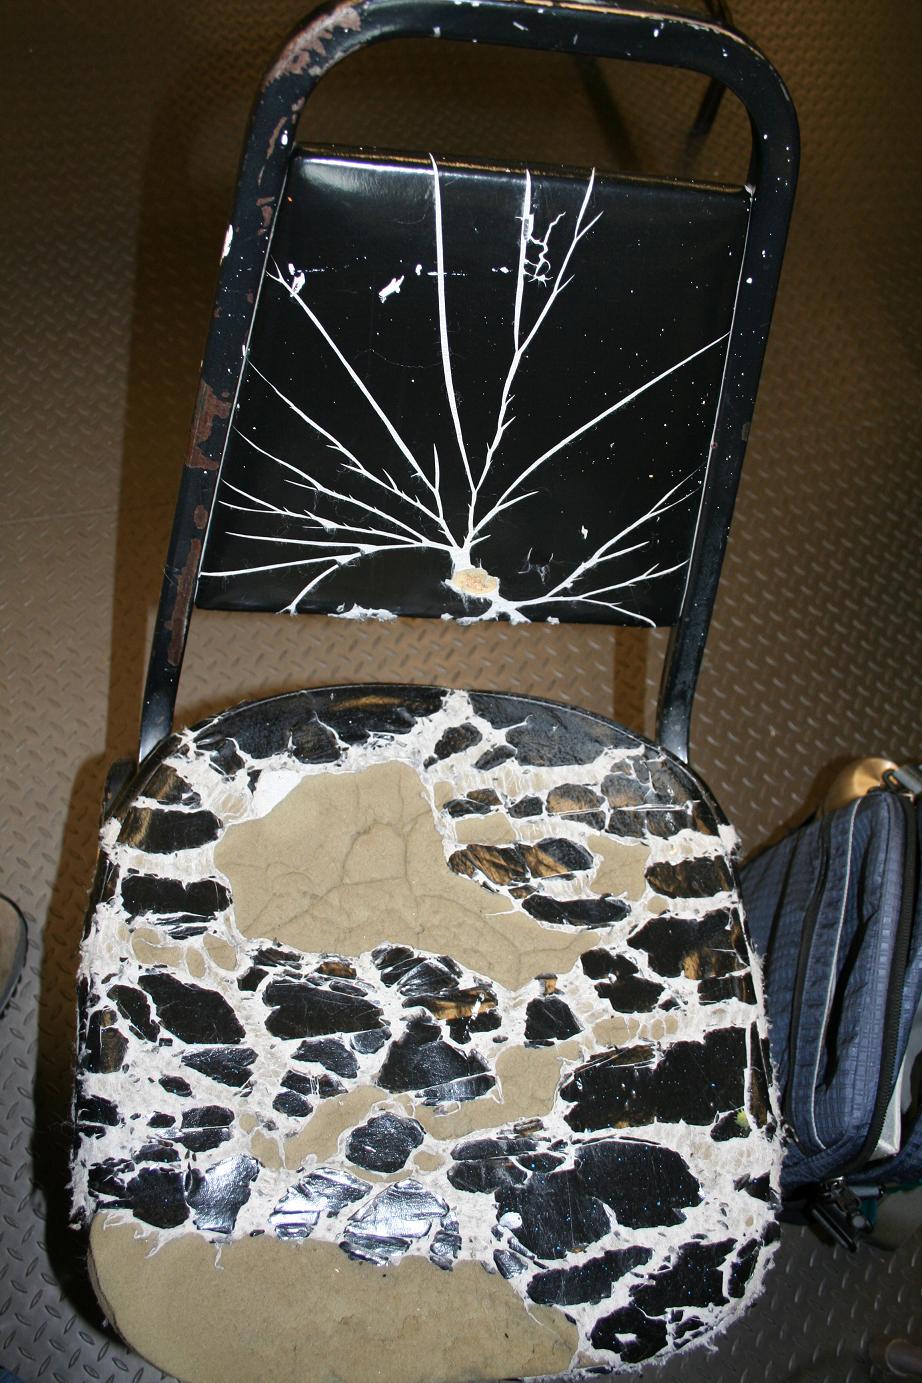 chair.JPG